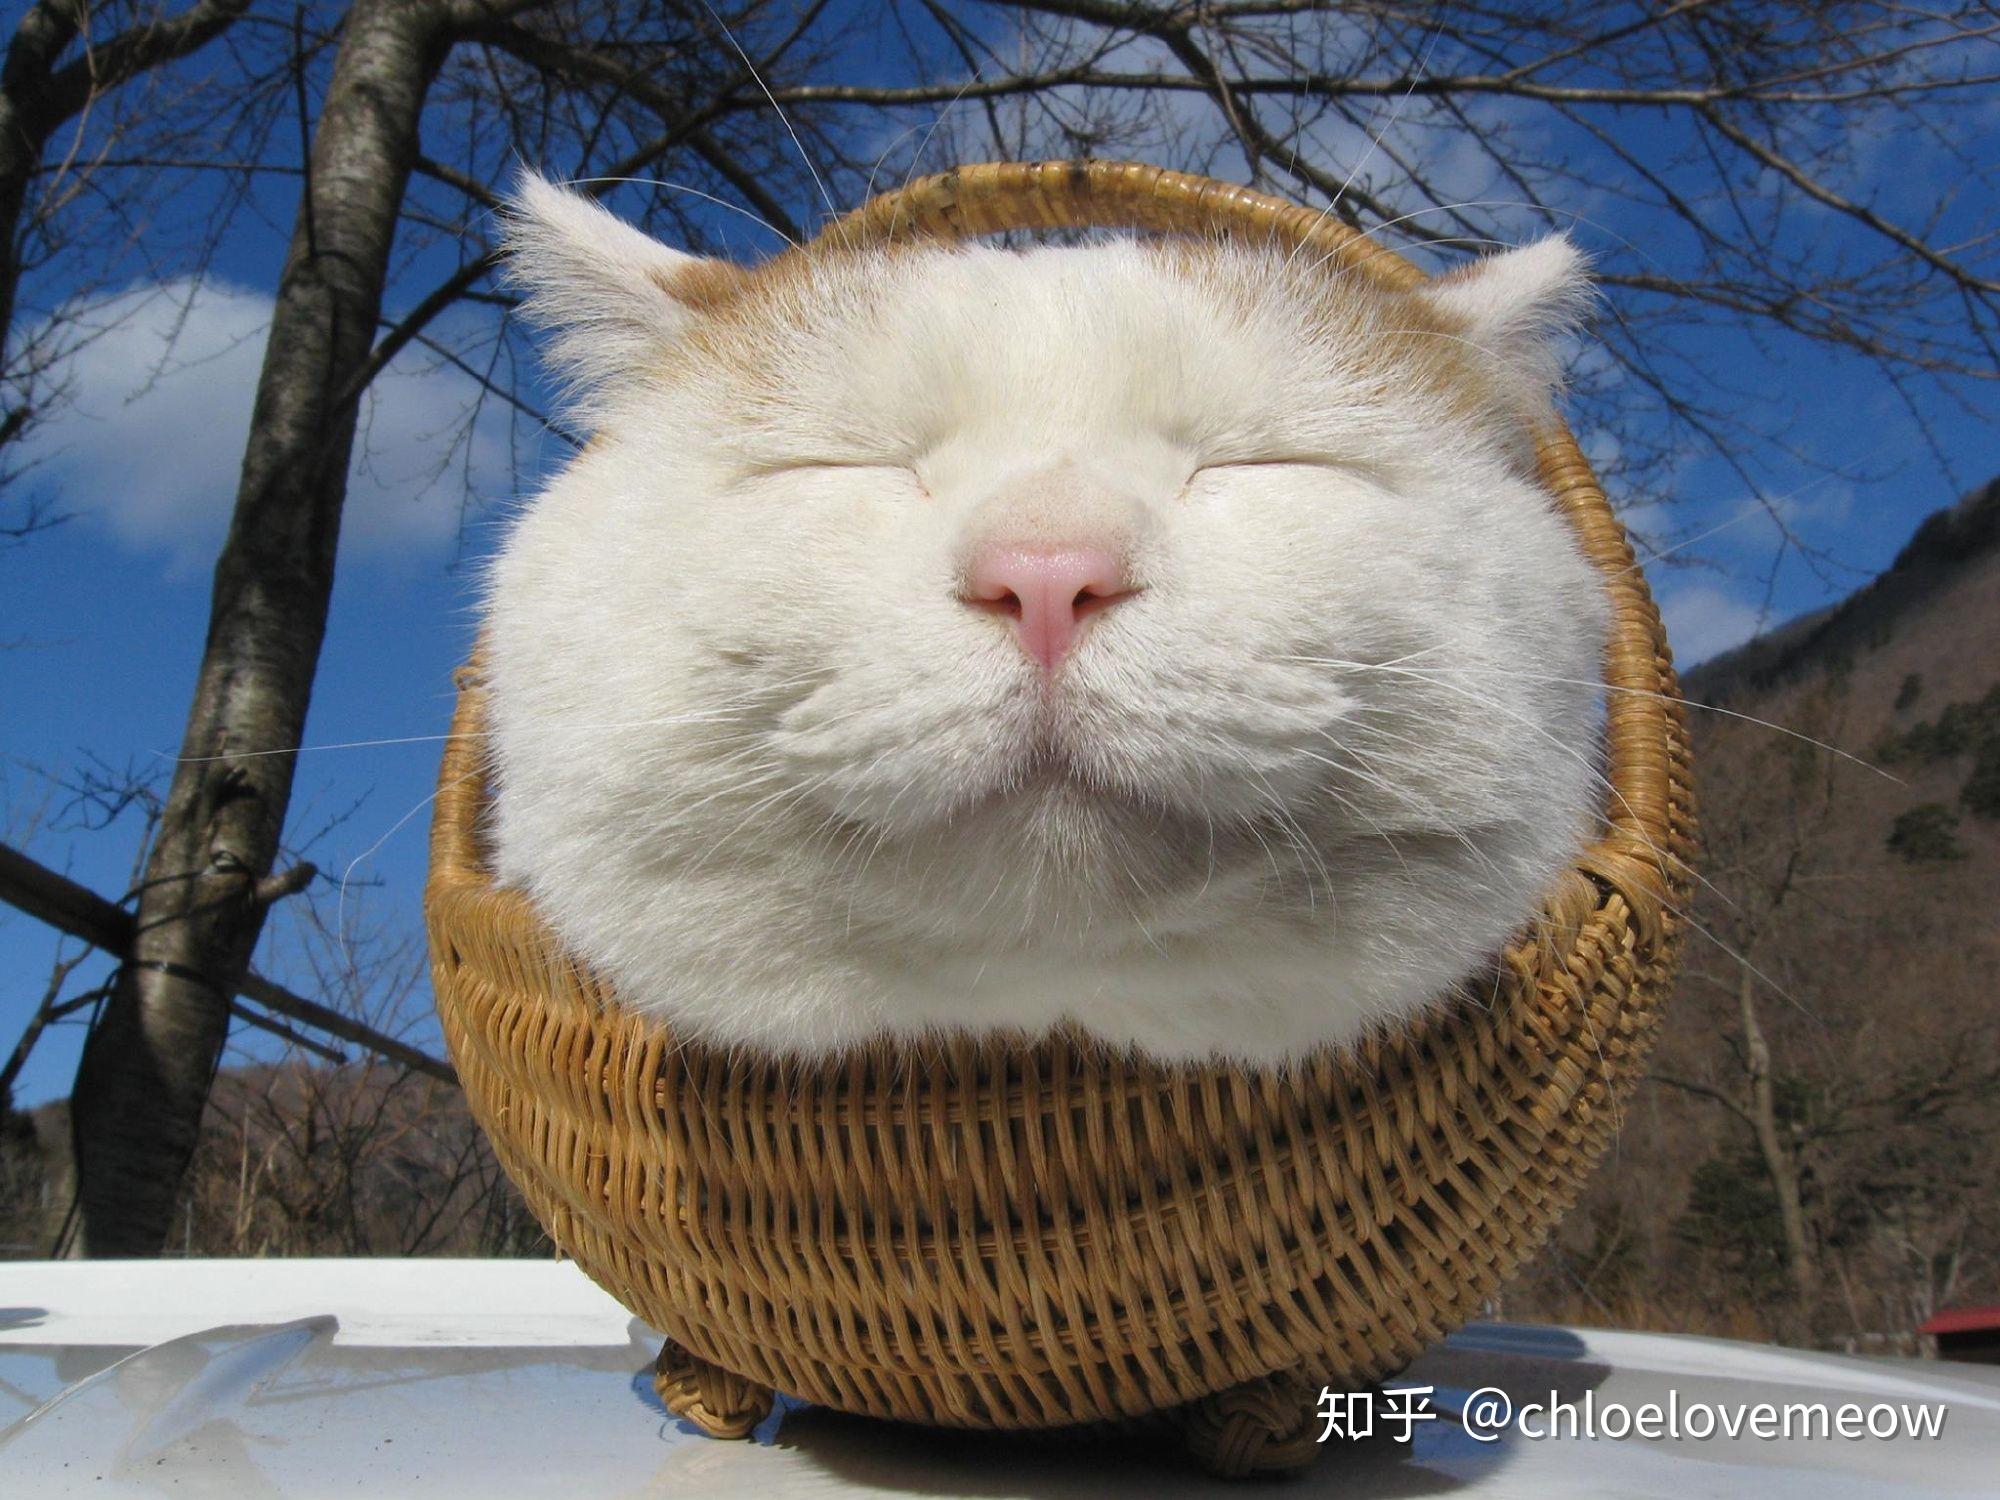 日本网红猫咪猫叔去世,你有什么想对猫叔说的?